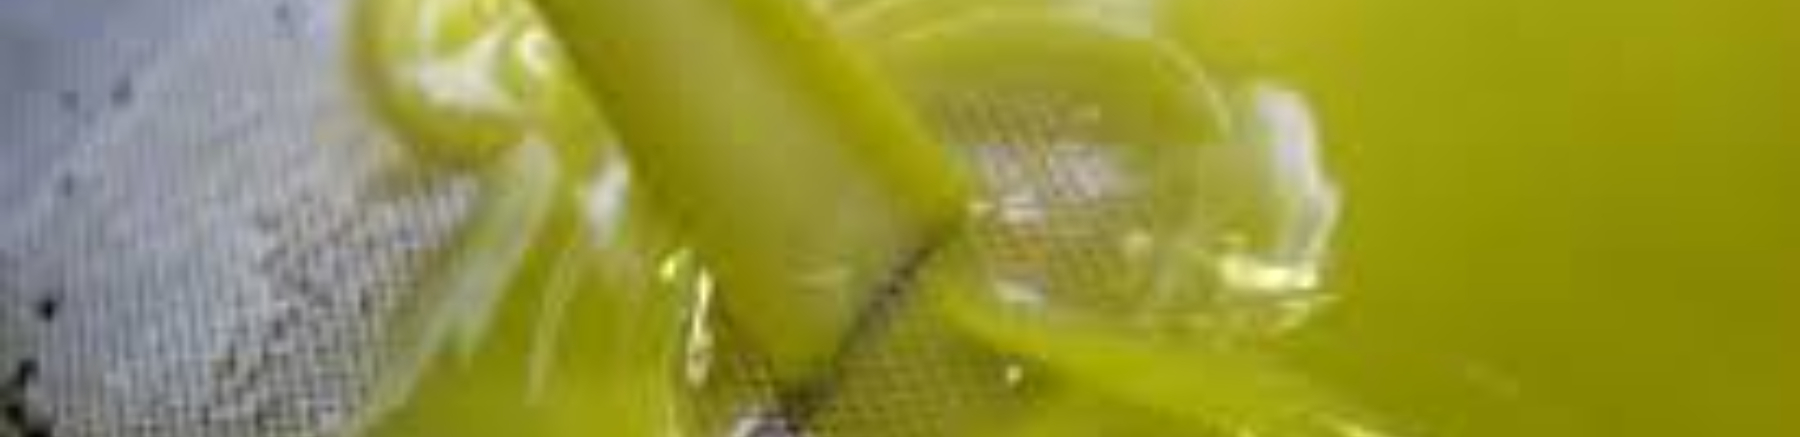 1 olivo-potatura e concimazione: Immagine Header